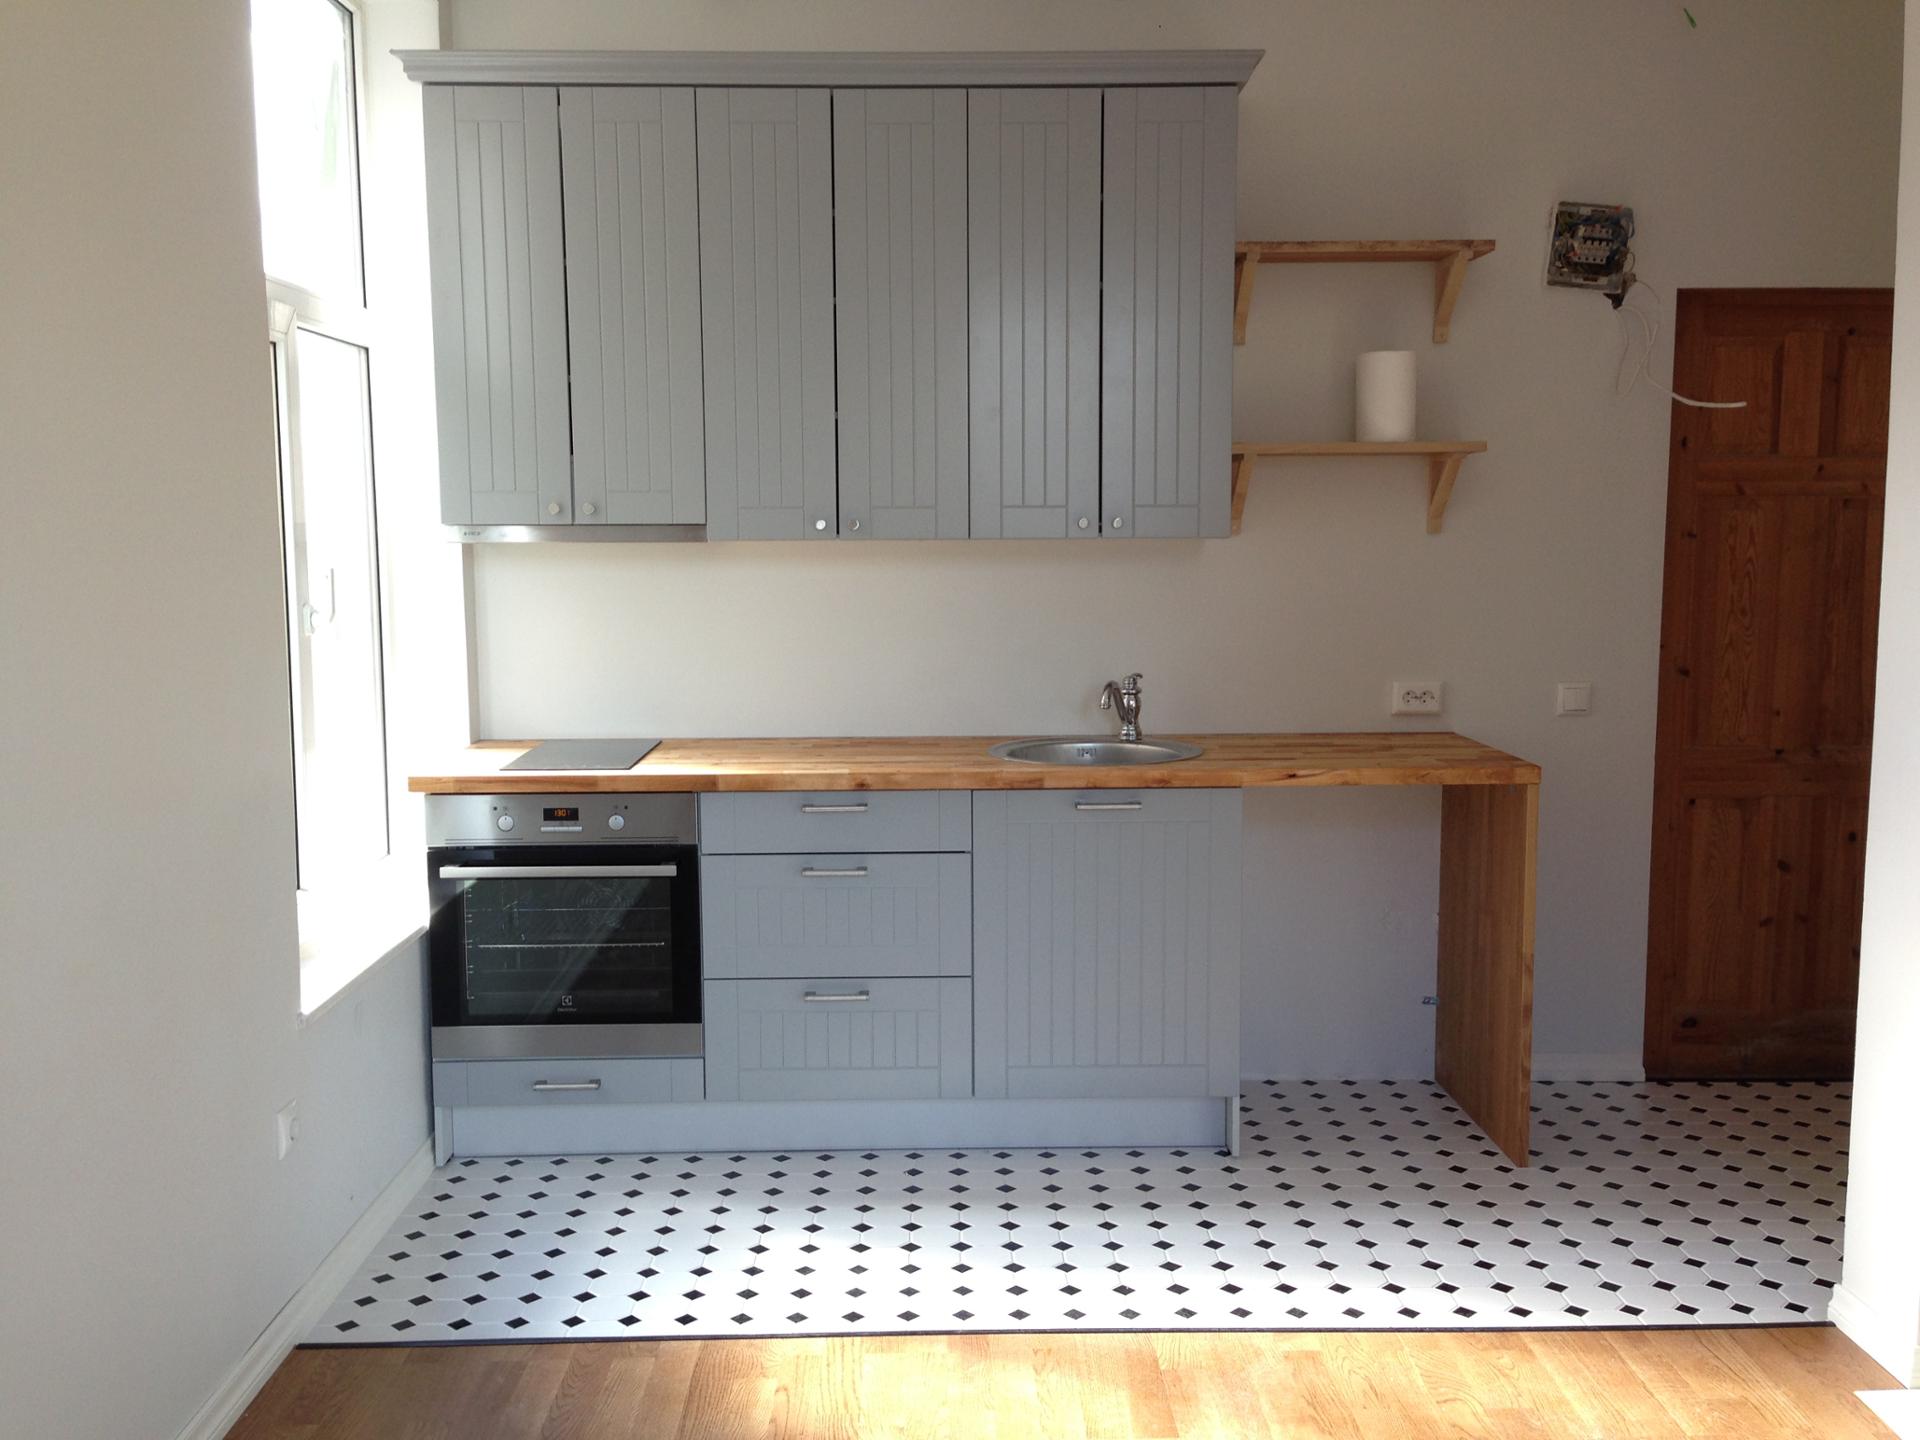 Väike köök – 15 soovitust, et see hästi toimiks